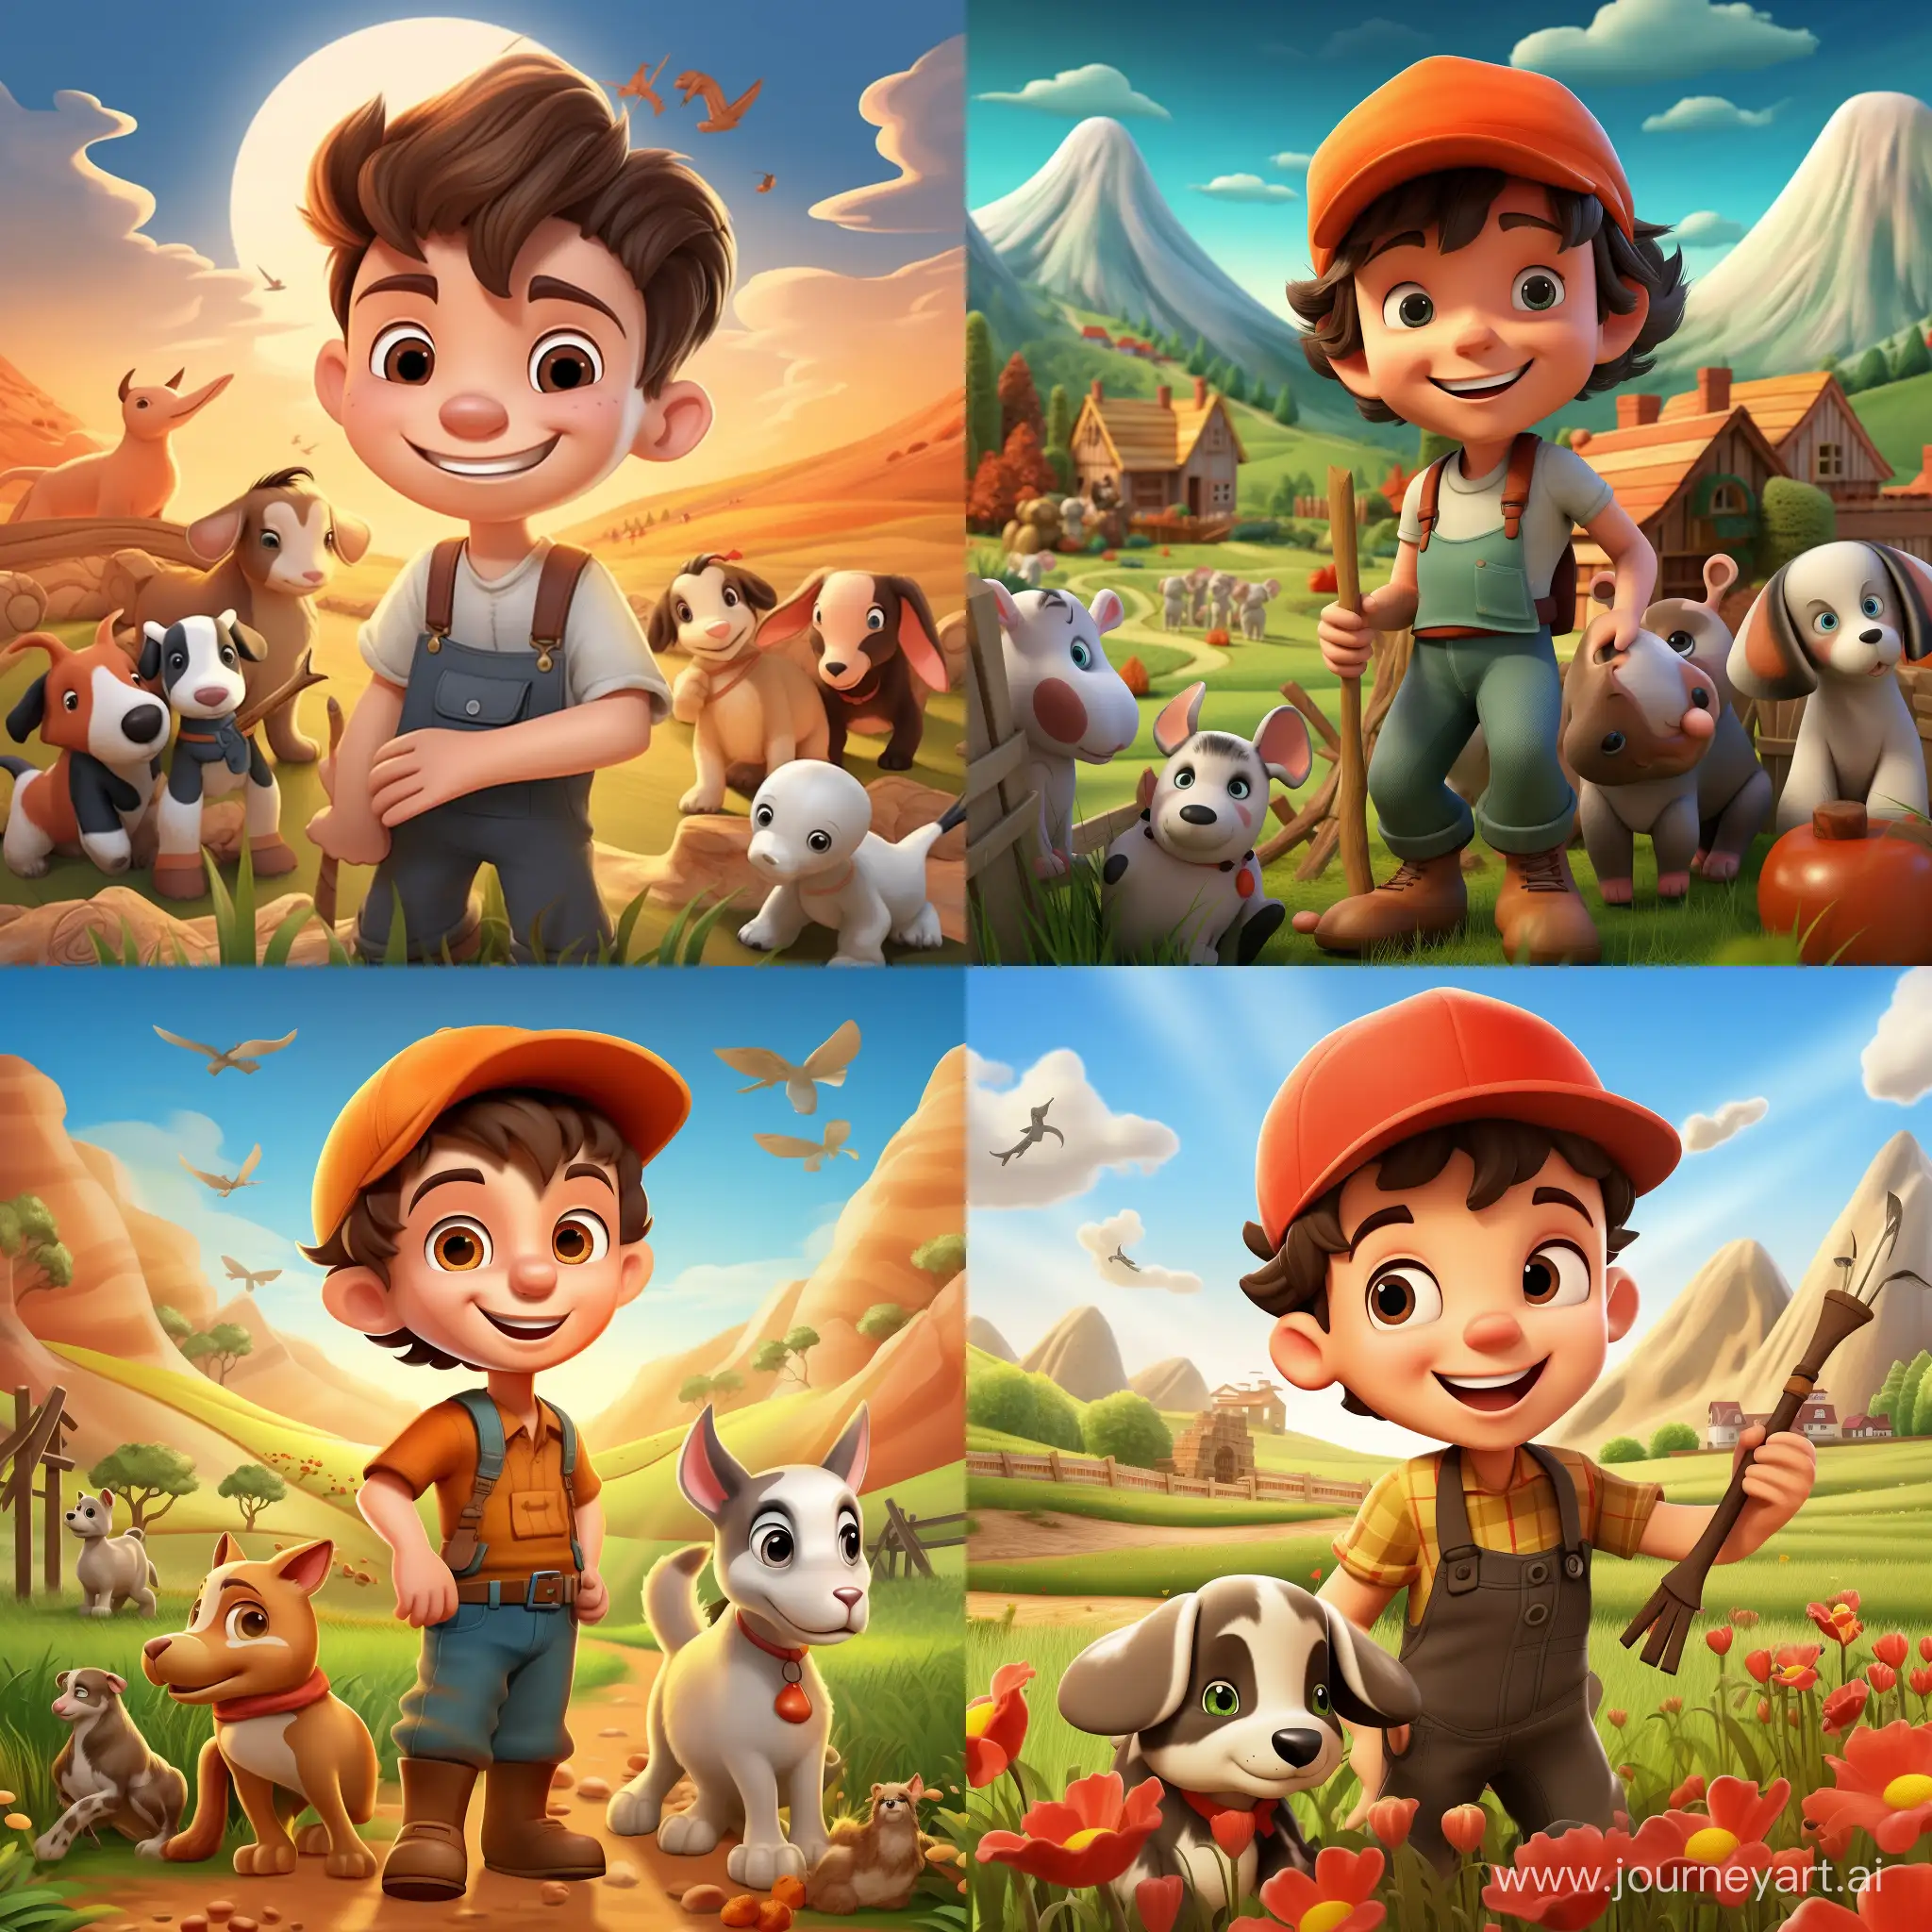 Joyful-3D-Cartoon-Farmer-Boy-with-Animals-on-a-Scenic-Farm